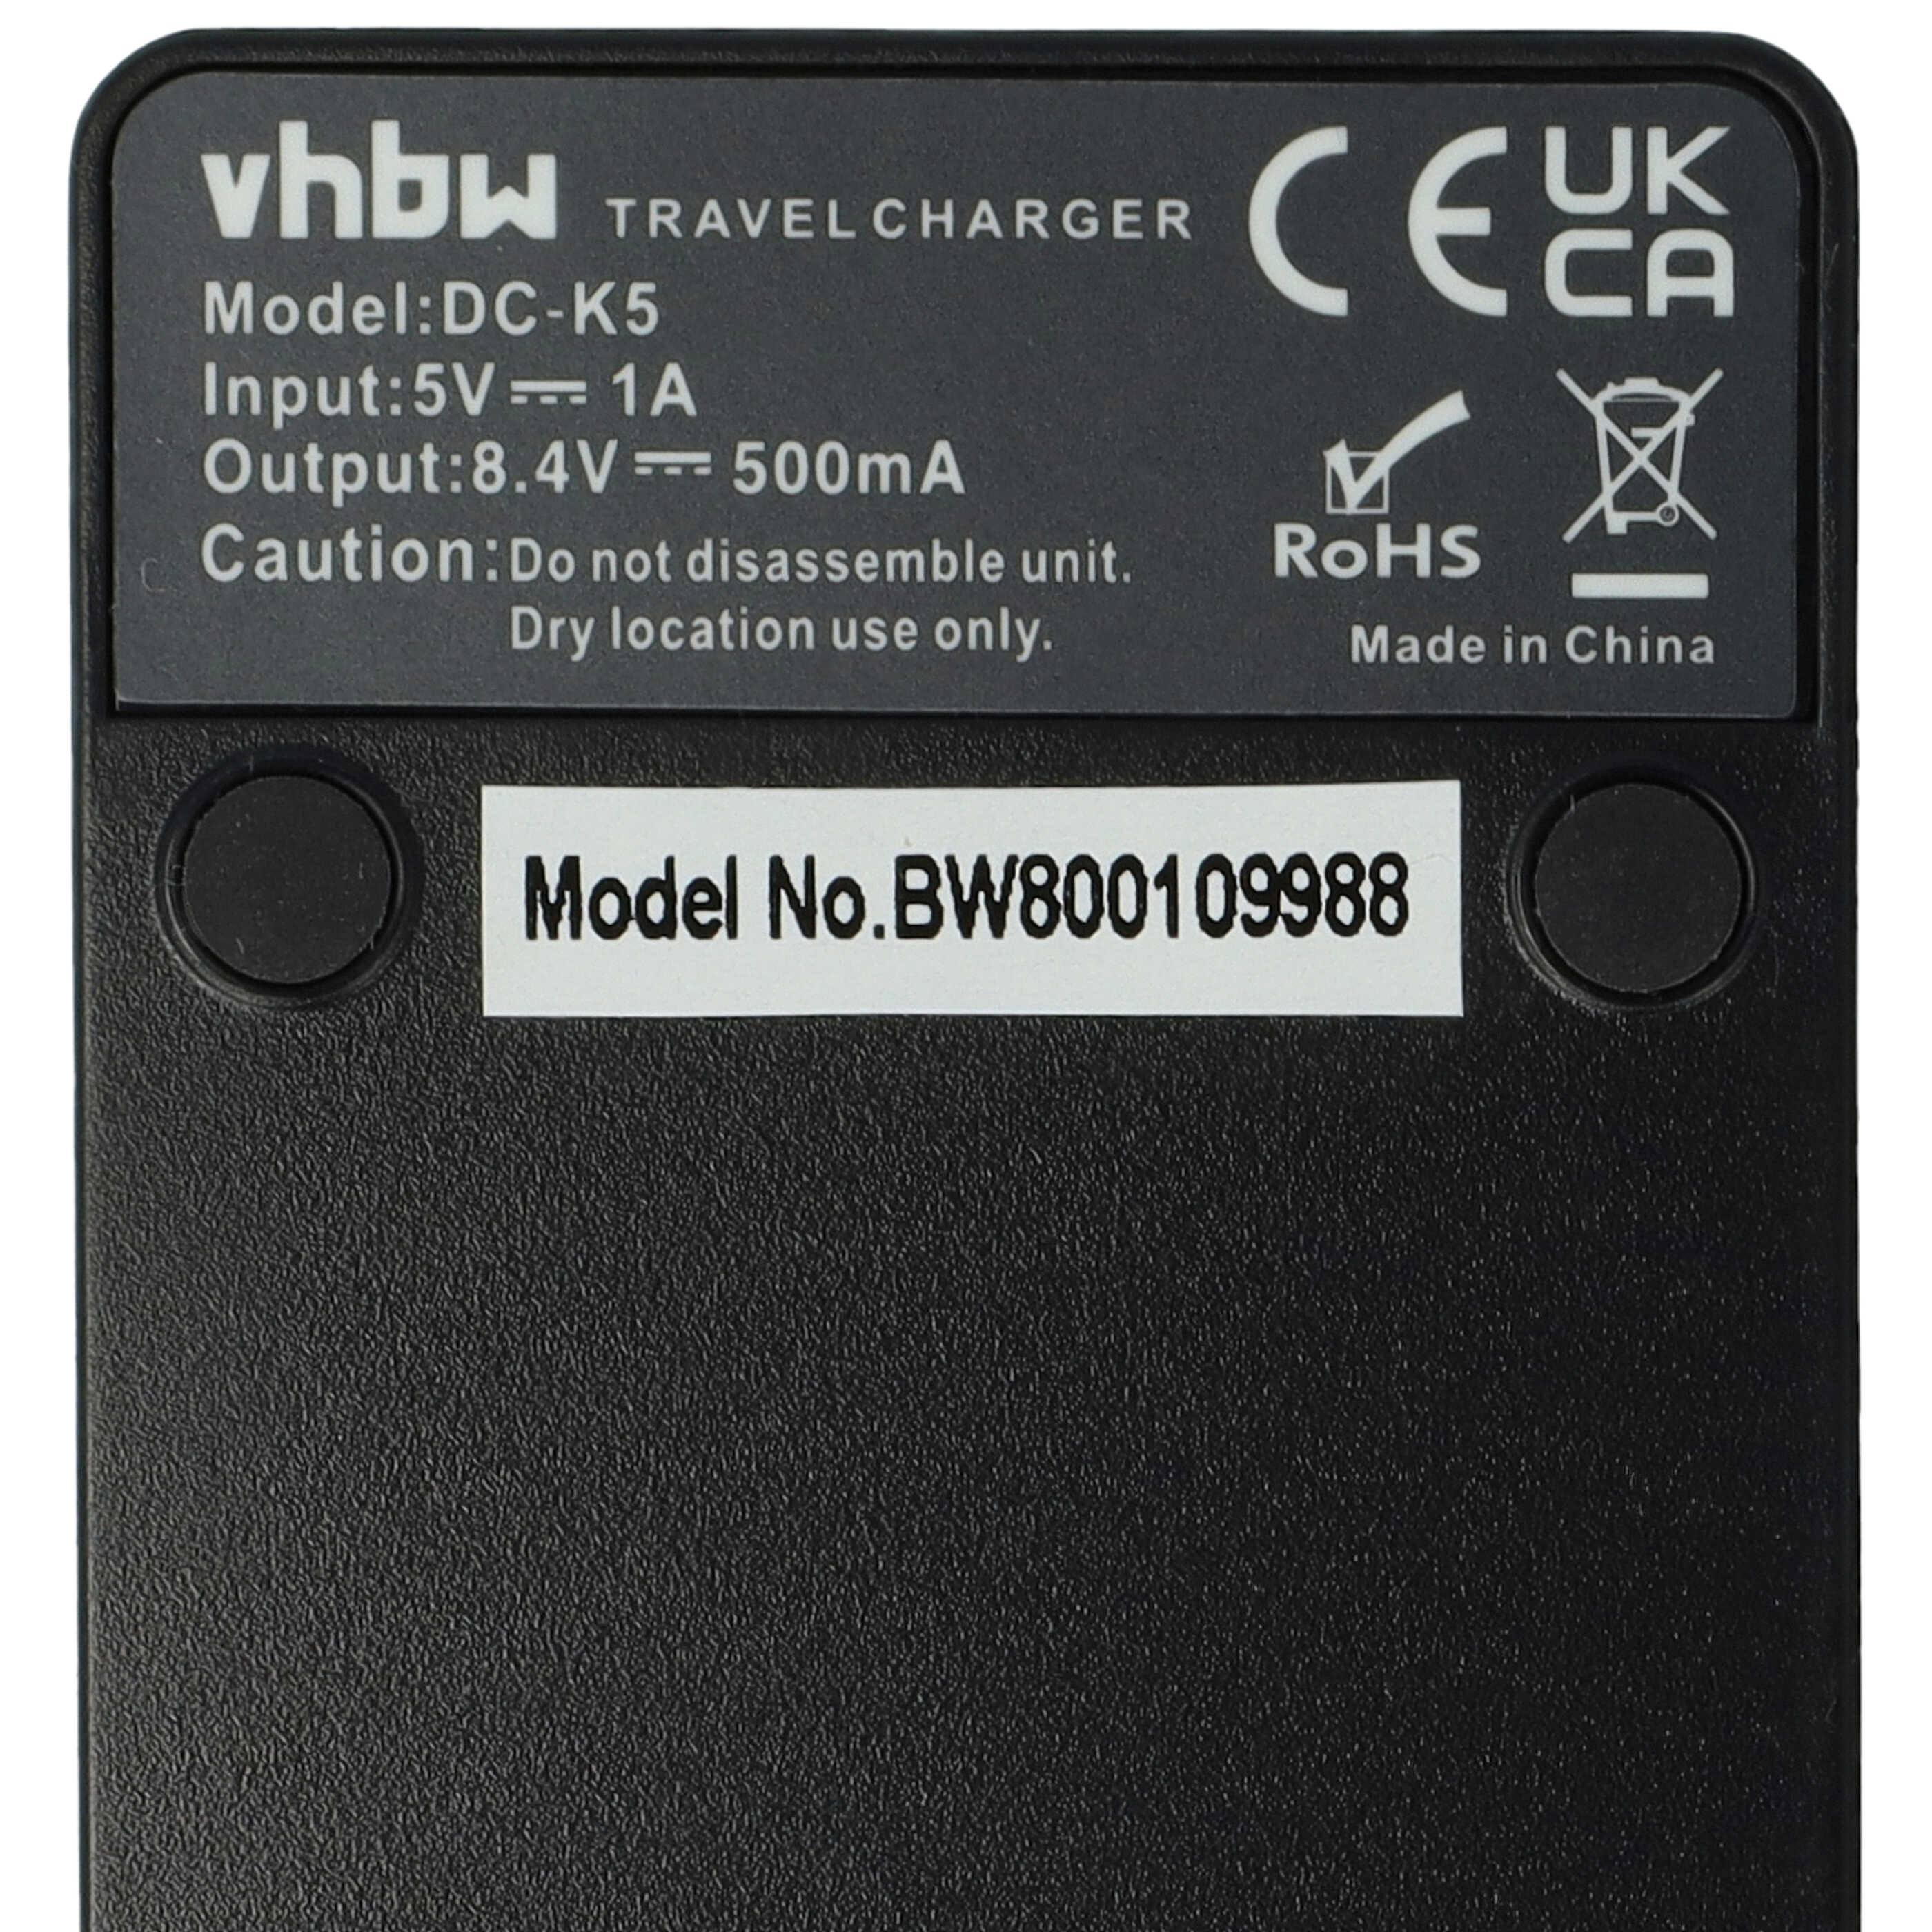 Chargeur pour appareil photo V-Lux 1 